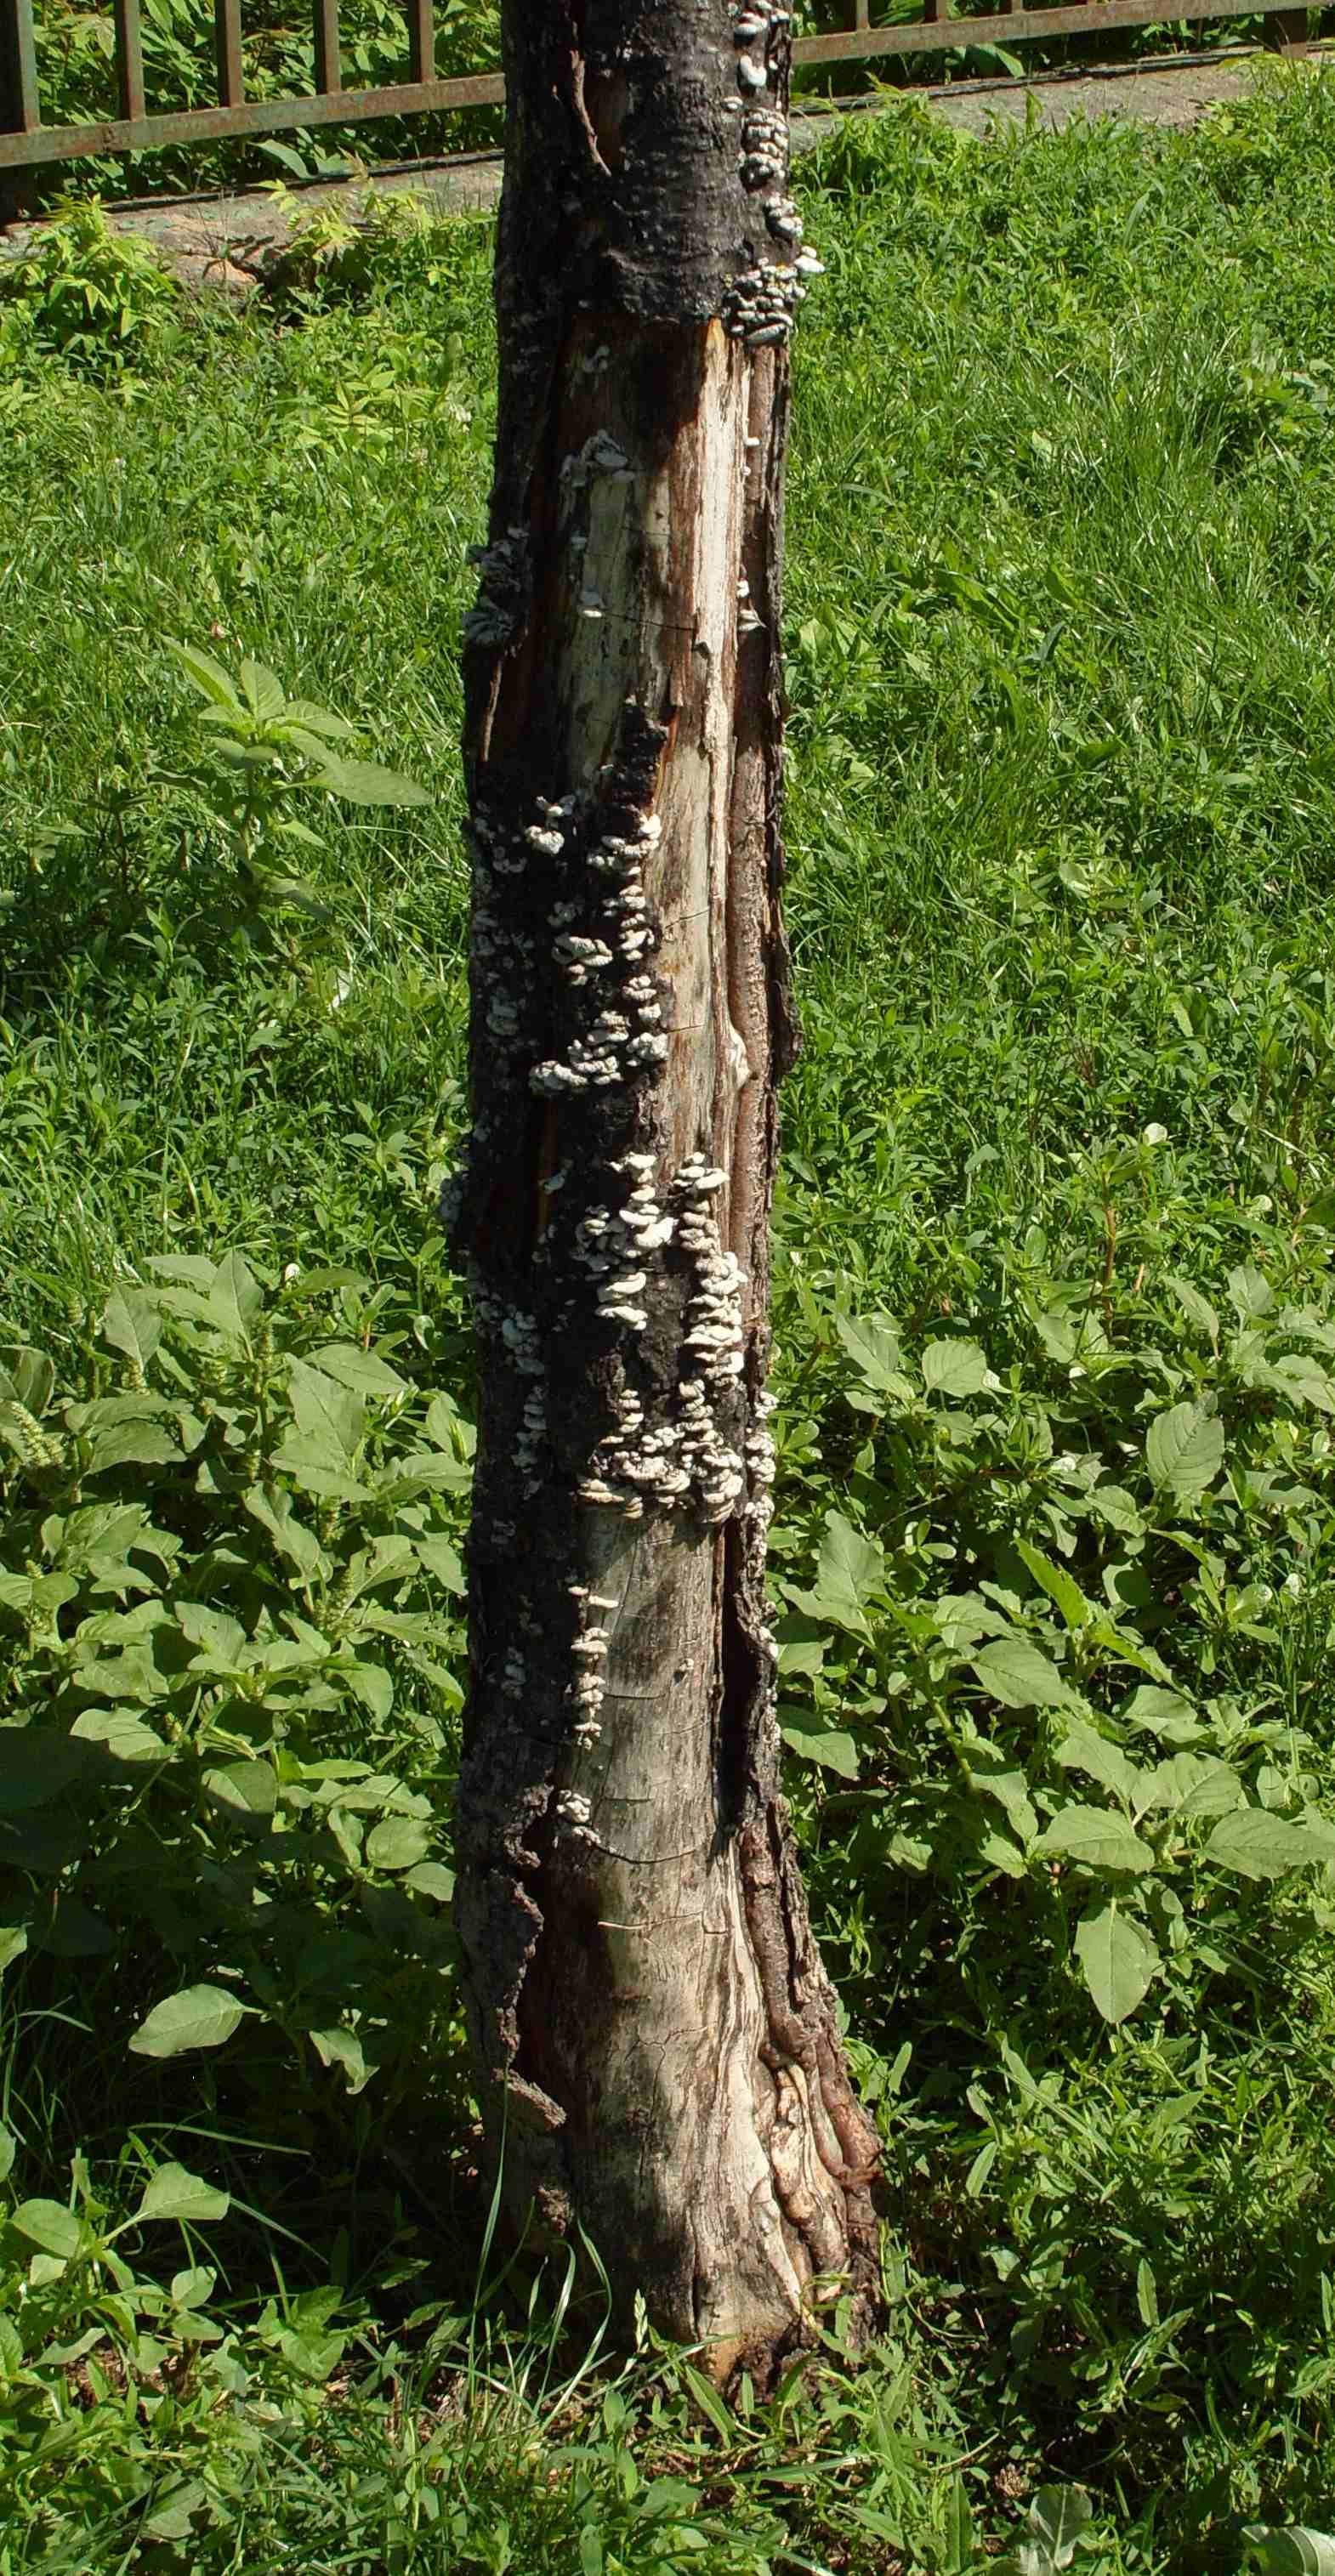 Hasadtlemezű gombával fertőzött fa Budapesten (Fotó: Vajna László)